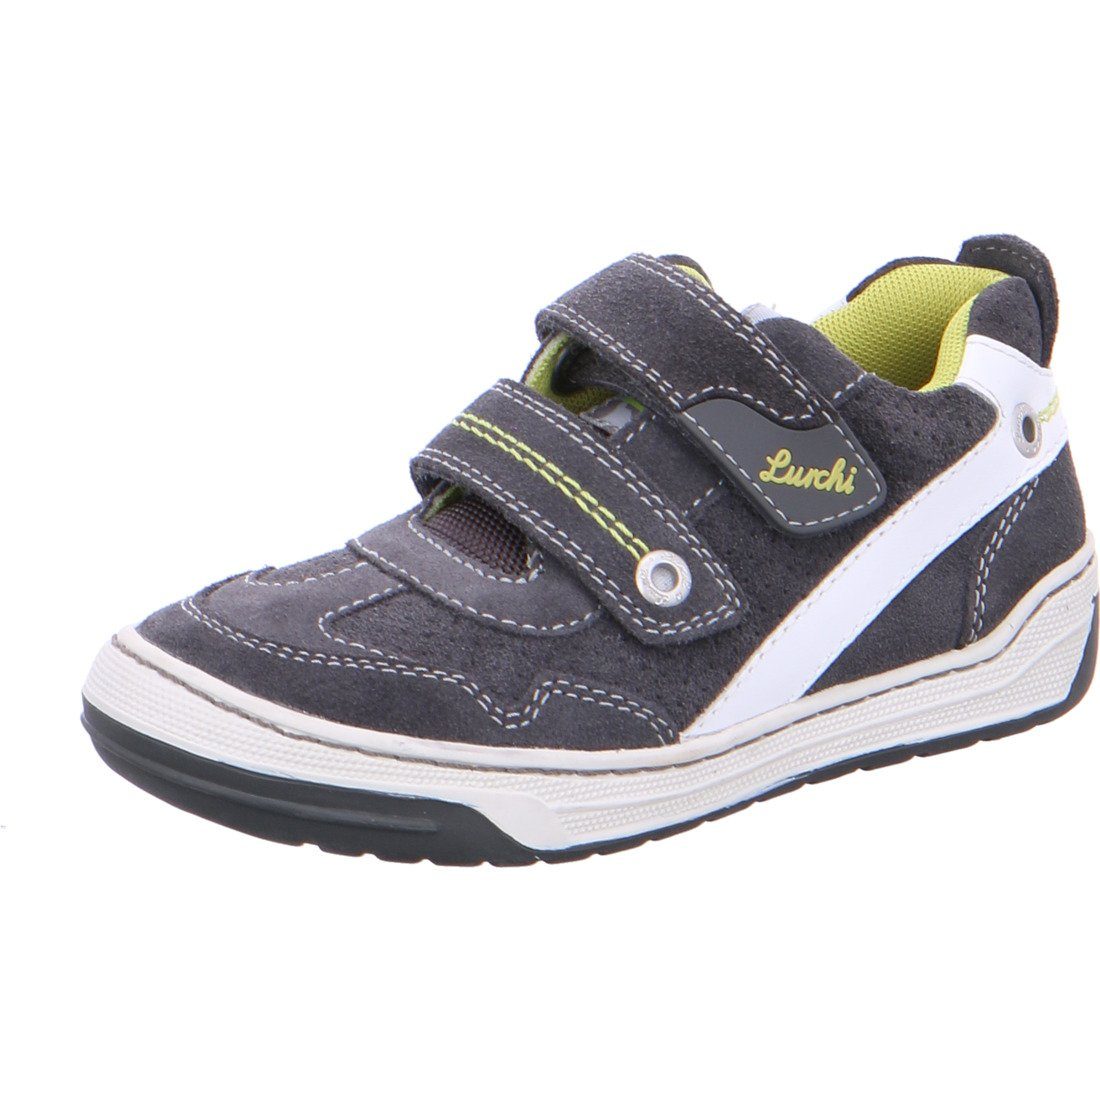 Lurchi Lurchi Schuhe, Sneaker Bruce - Rauleder Jungen Sneaker grau 036954